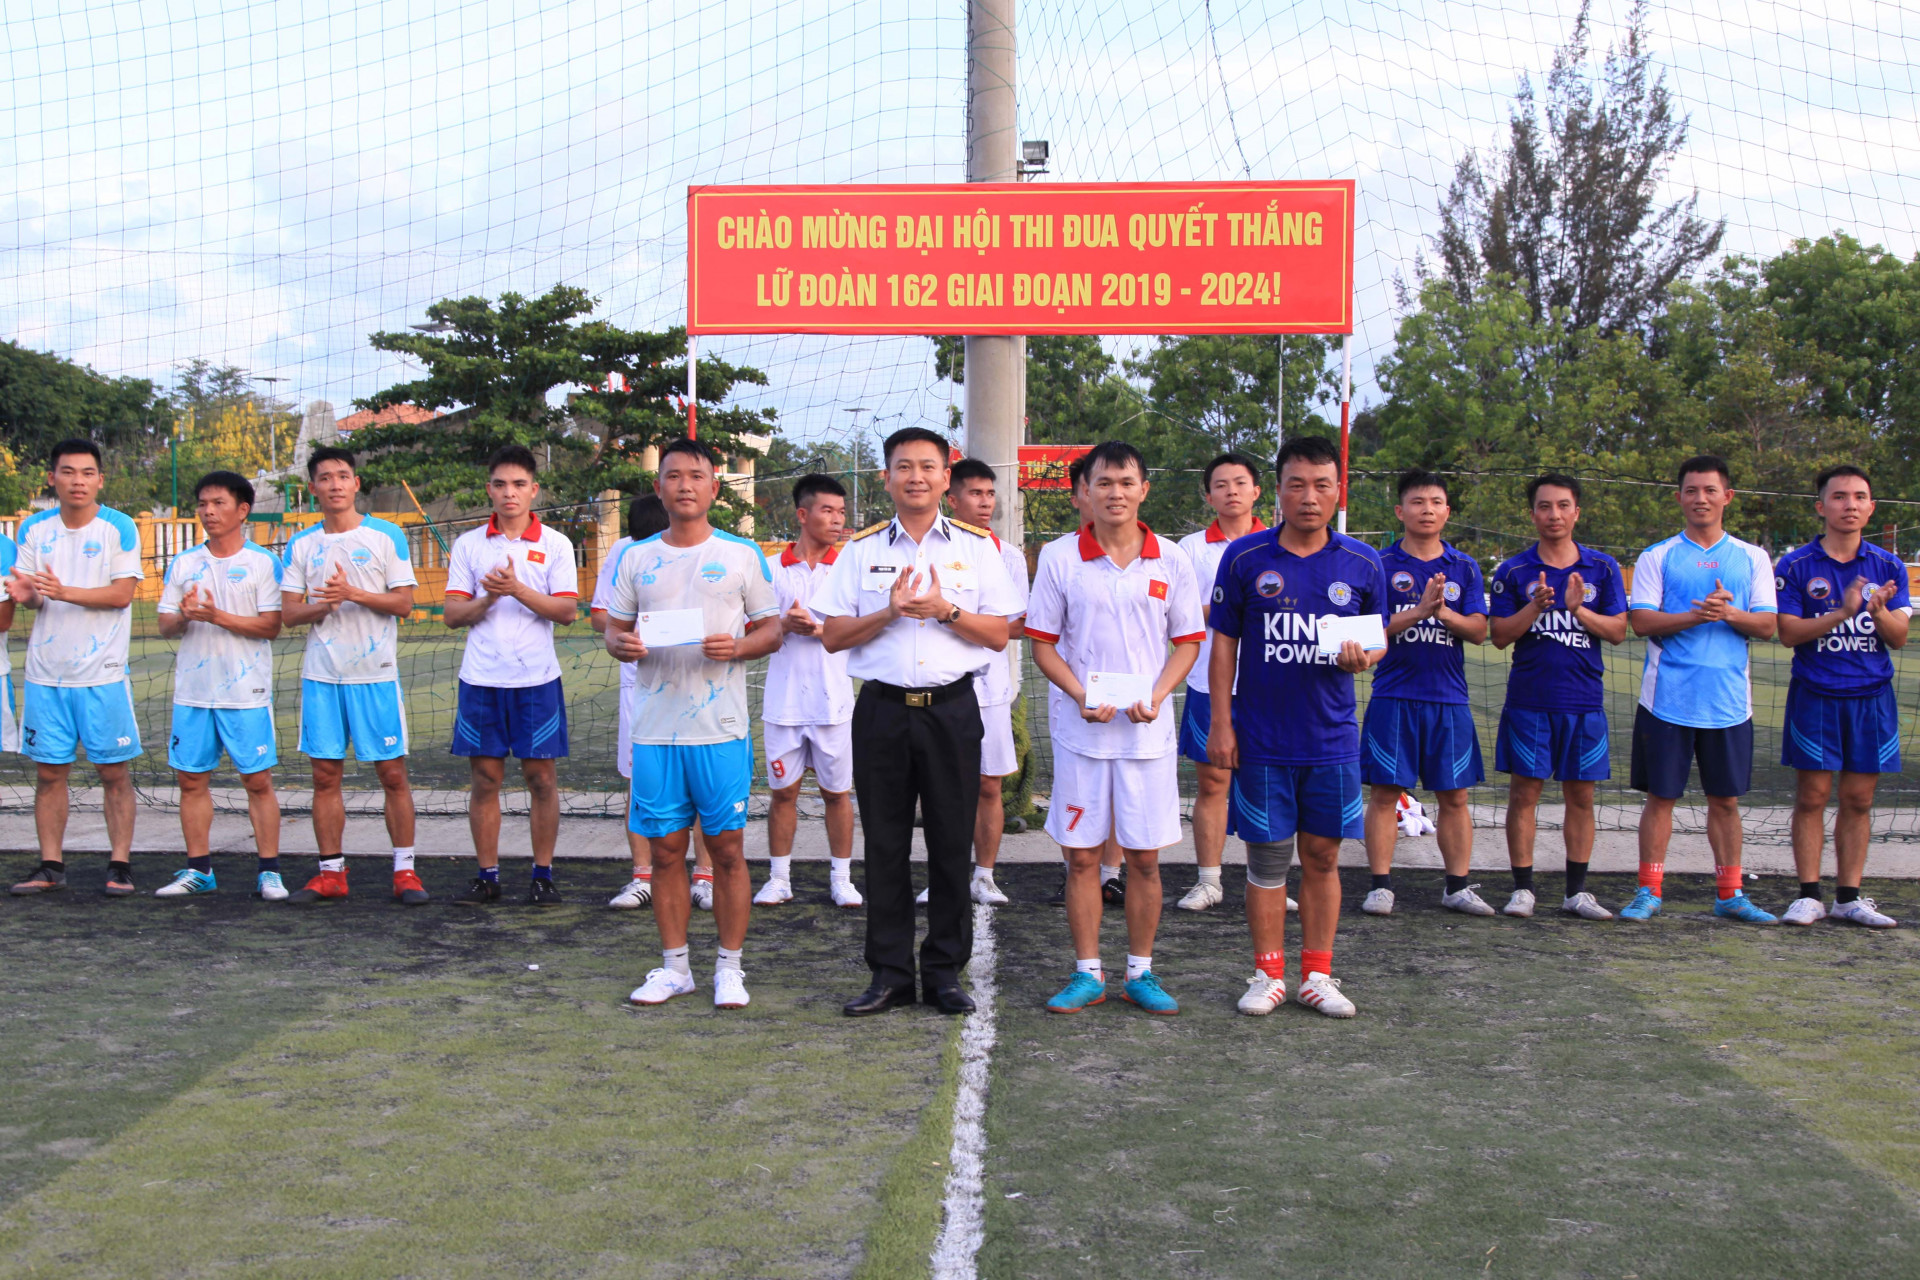 Thượng tá Phạm Văn Sơn - Lữ đoàn trưởng Lữ đoàn 162 trao giải cho các đội bóng đạt thành tích cao.